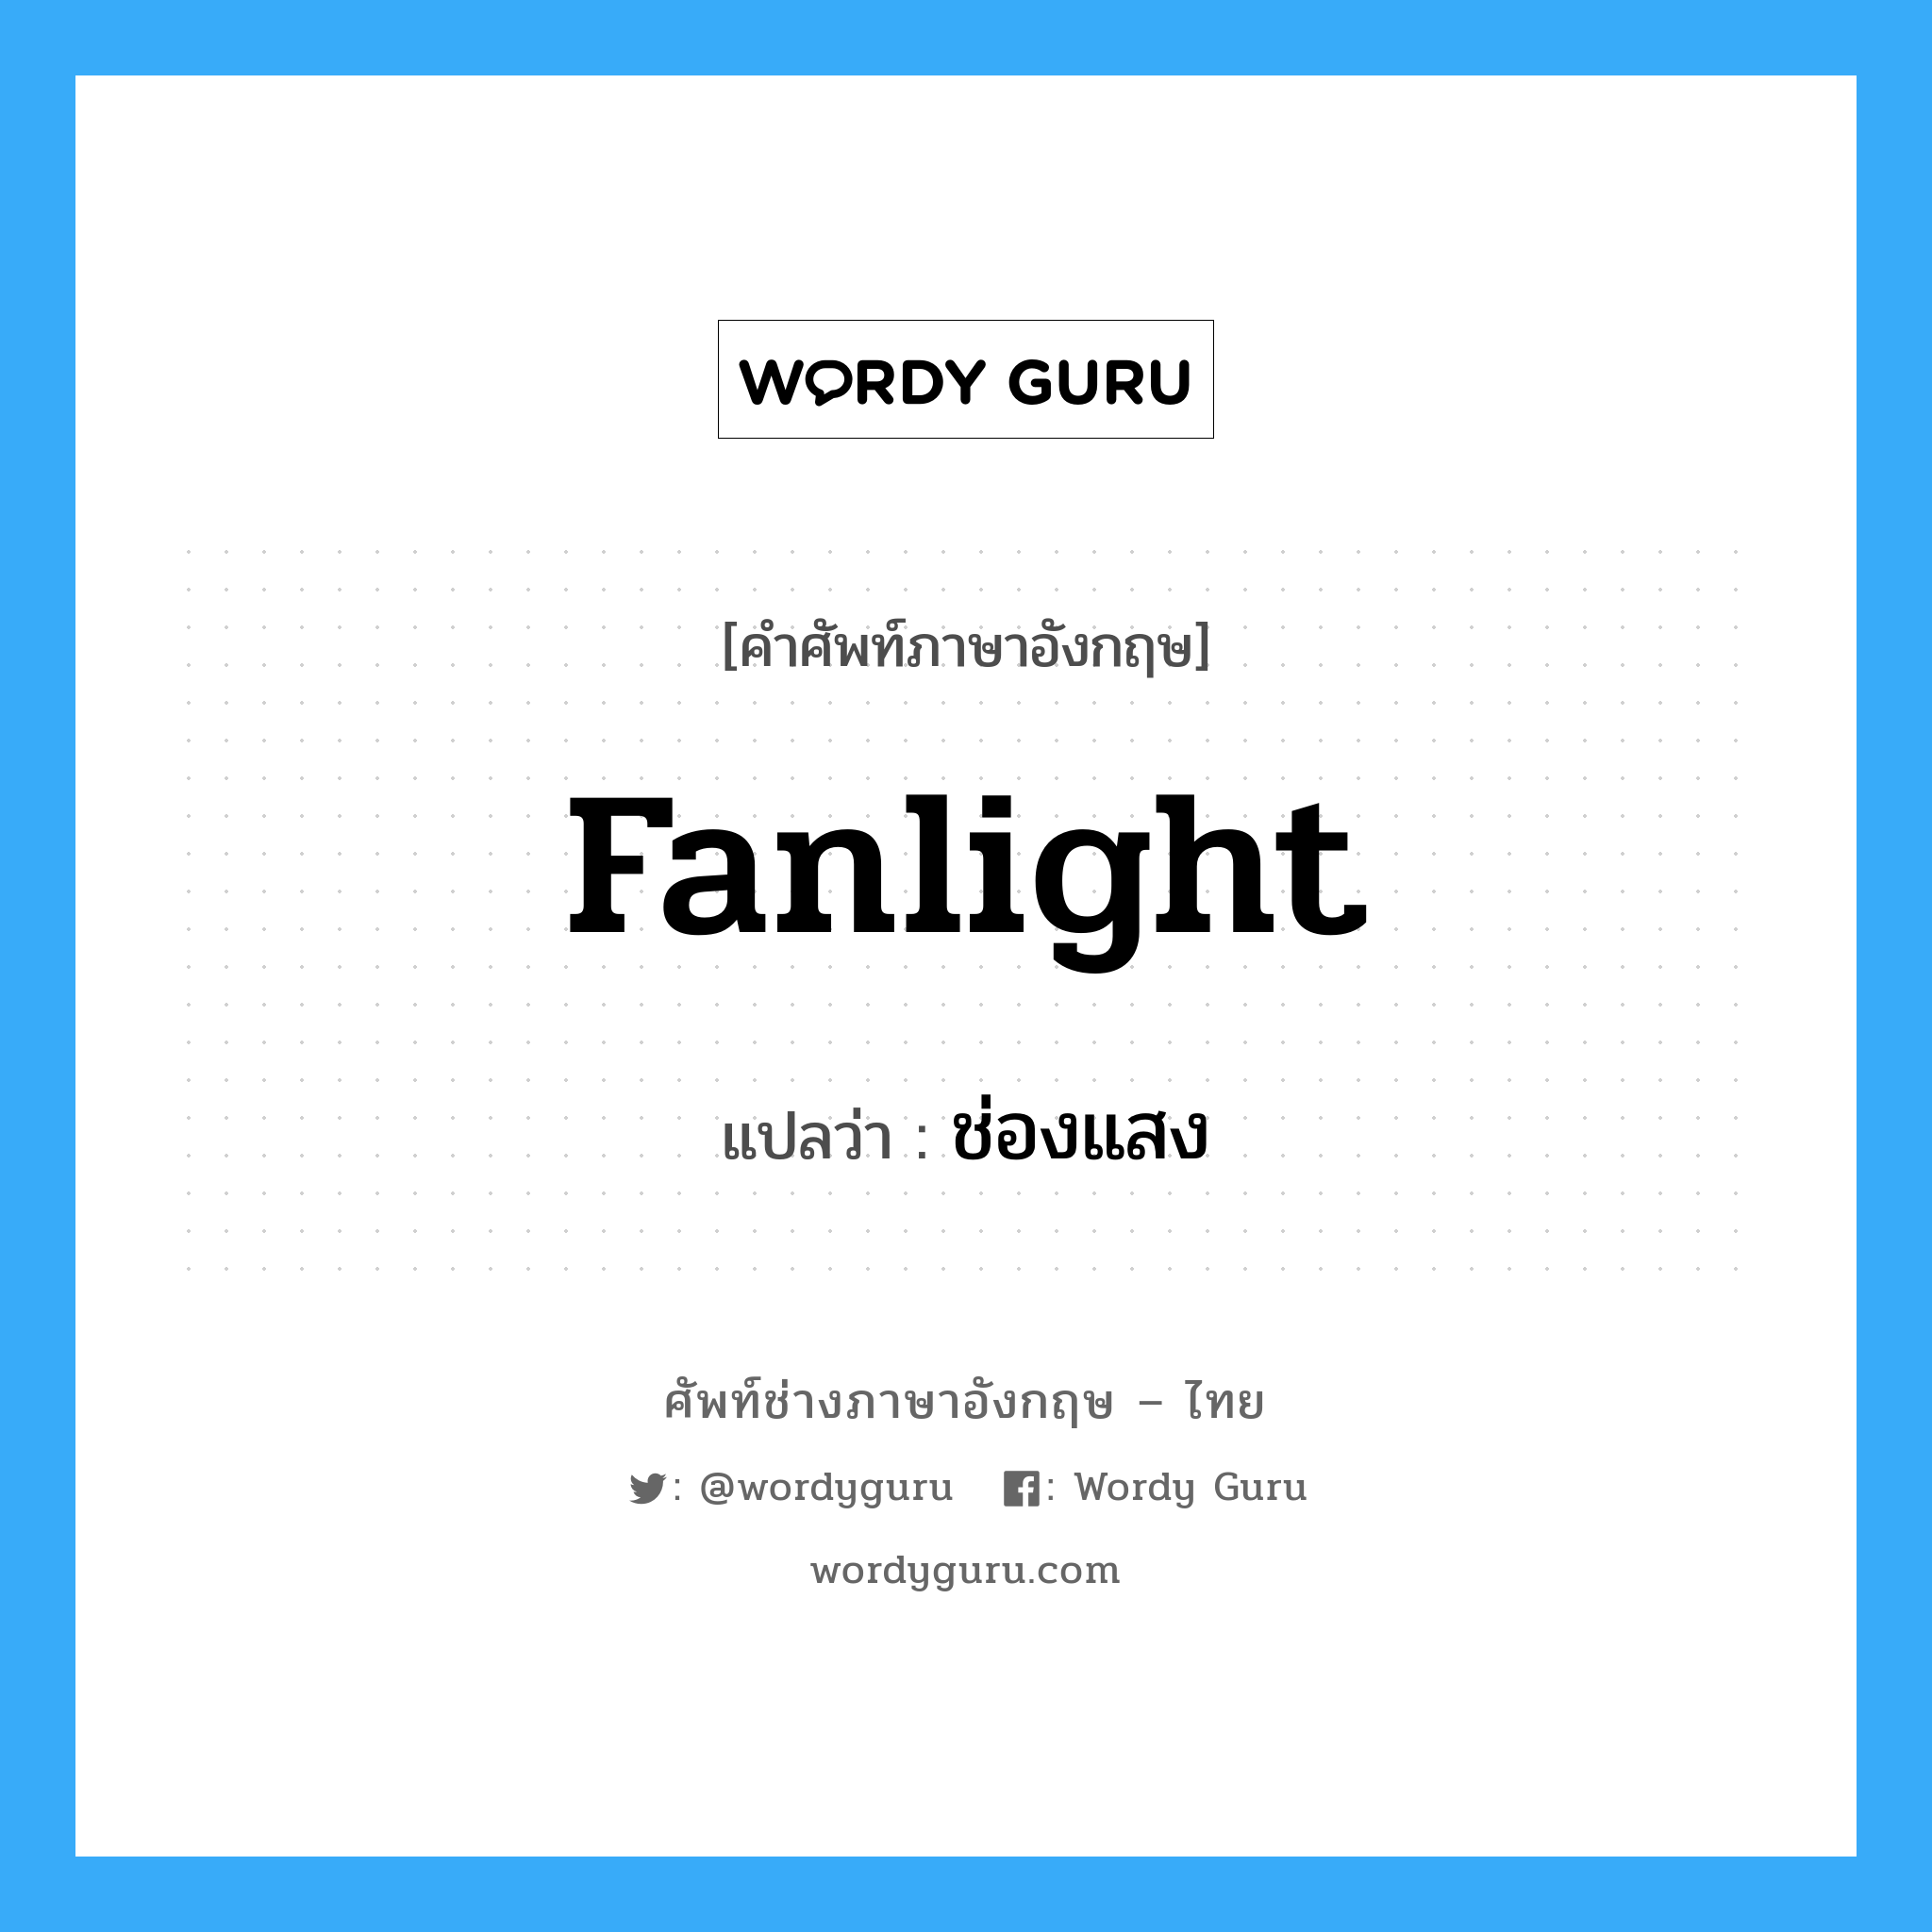 fanlight แปลว่า?, คำศัพท์ช่างภาษาอังกฤษ - ไทย fanlight คำศัพท์ภาษาอังกฤษ fanlight แปลว่า ช่องแสง